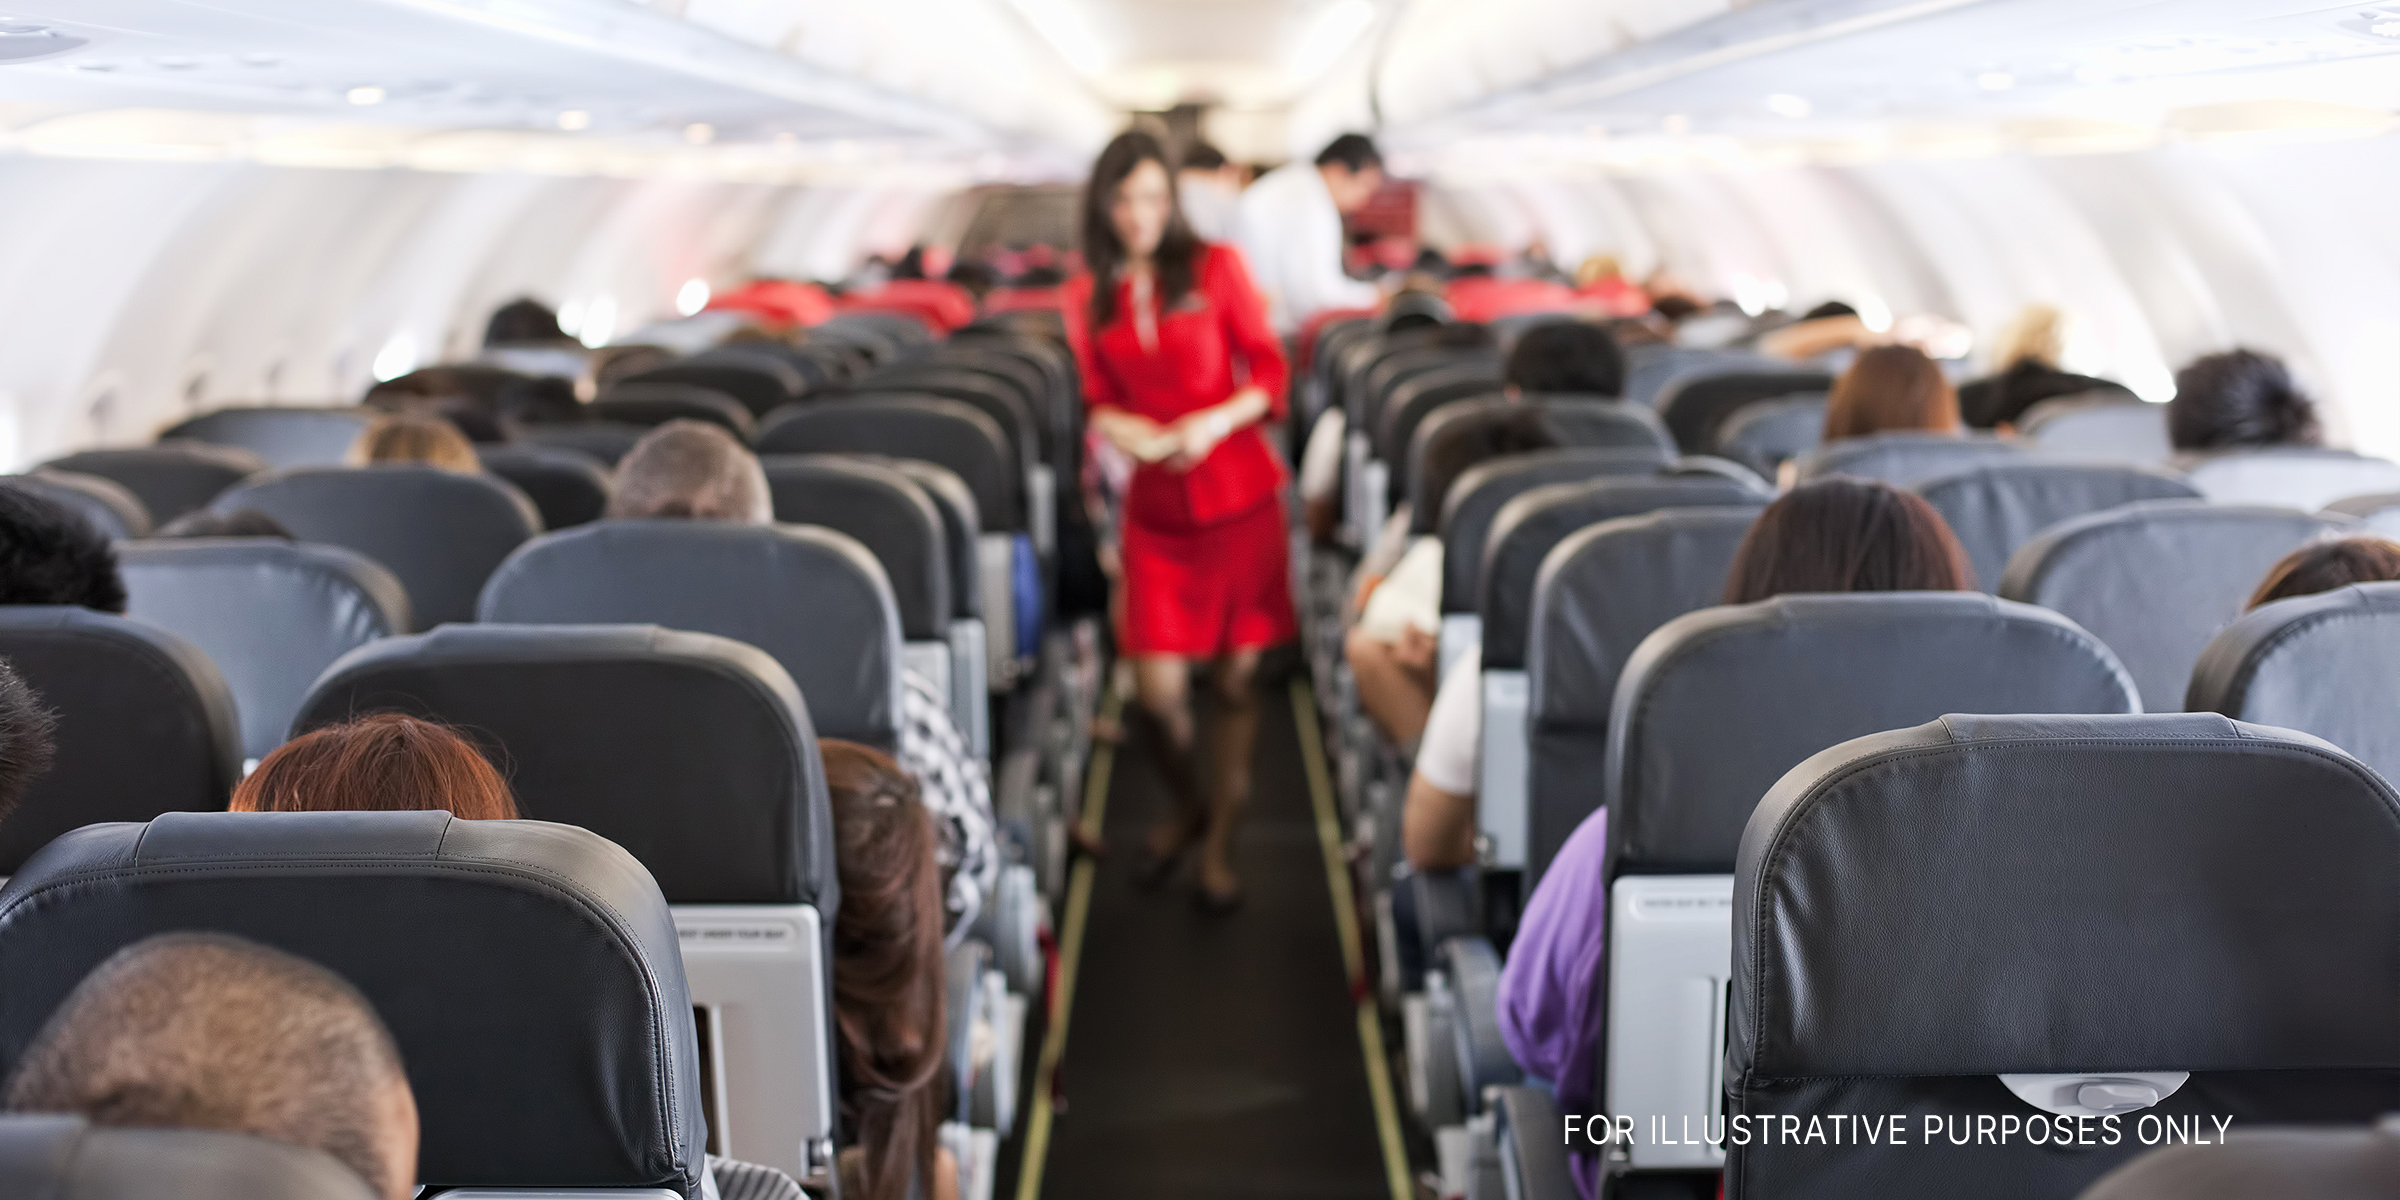 Menschen in einem Flugzeug | Quelle: Getty Images